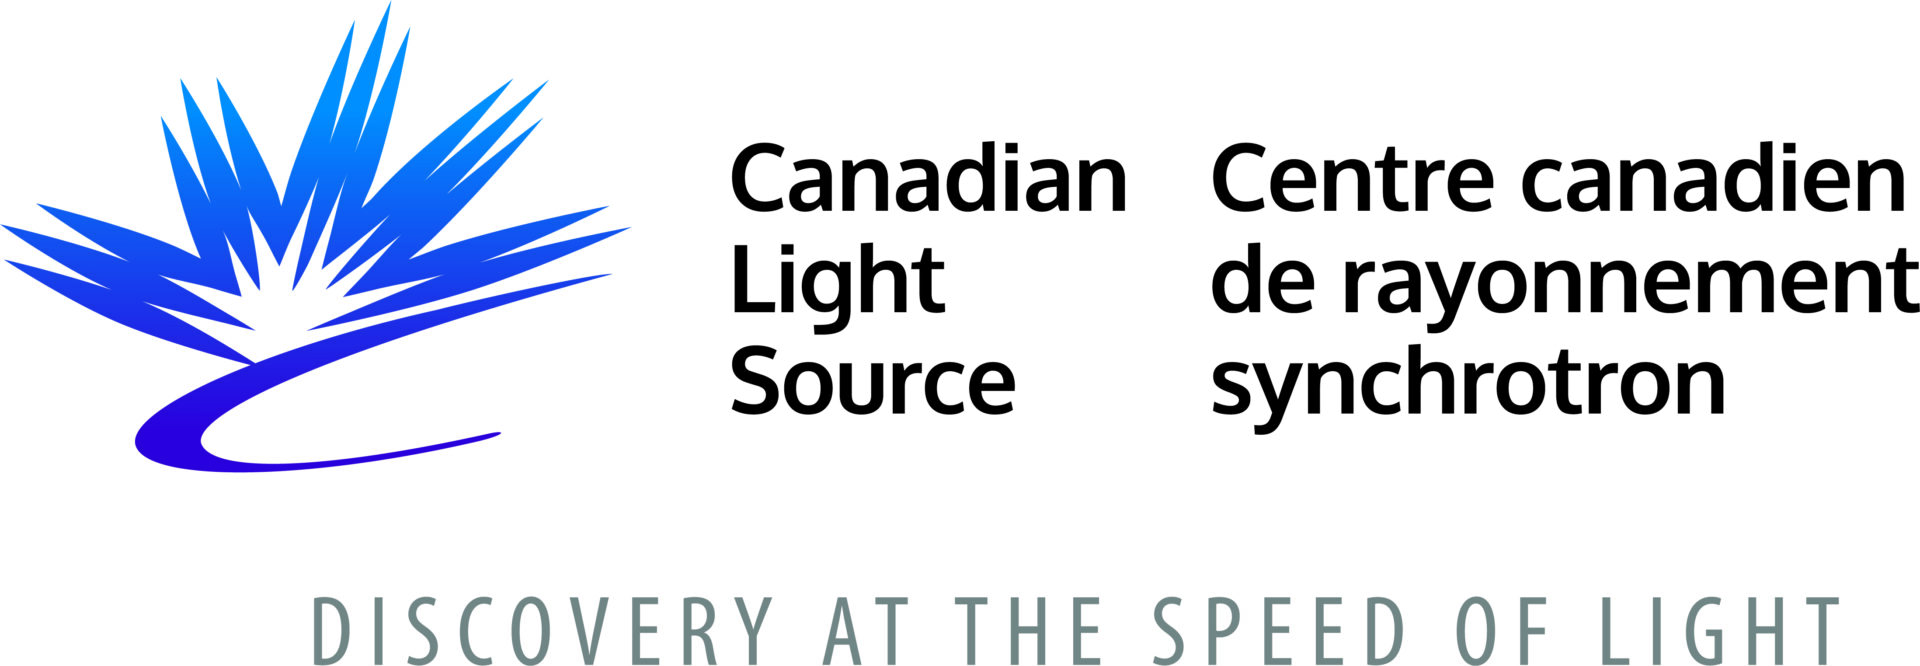 Logotipo de la fuente de luz canadiense